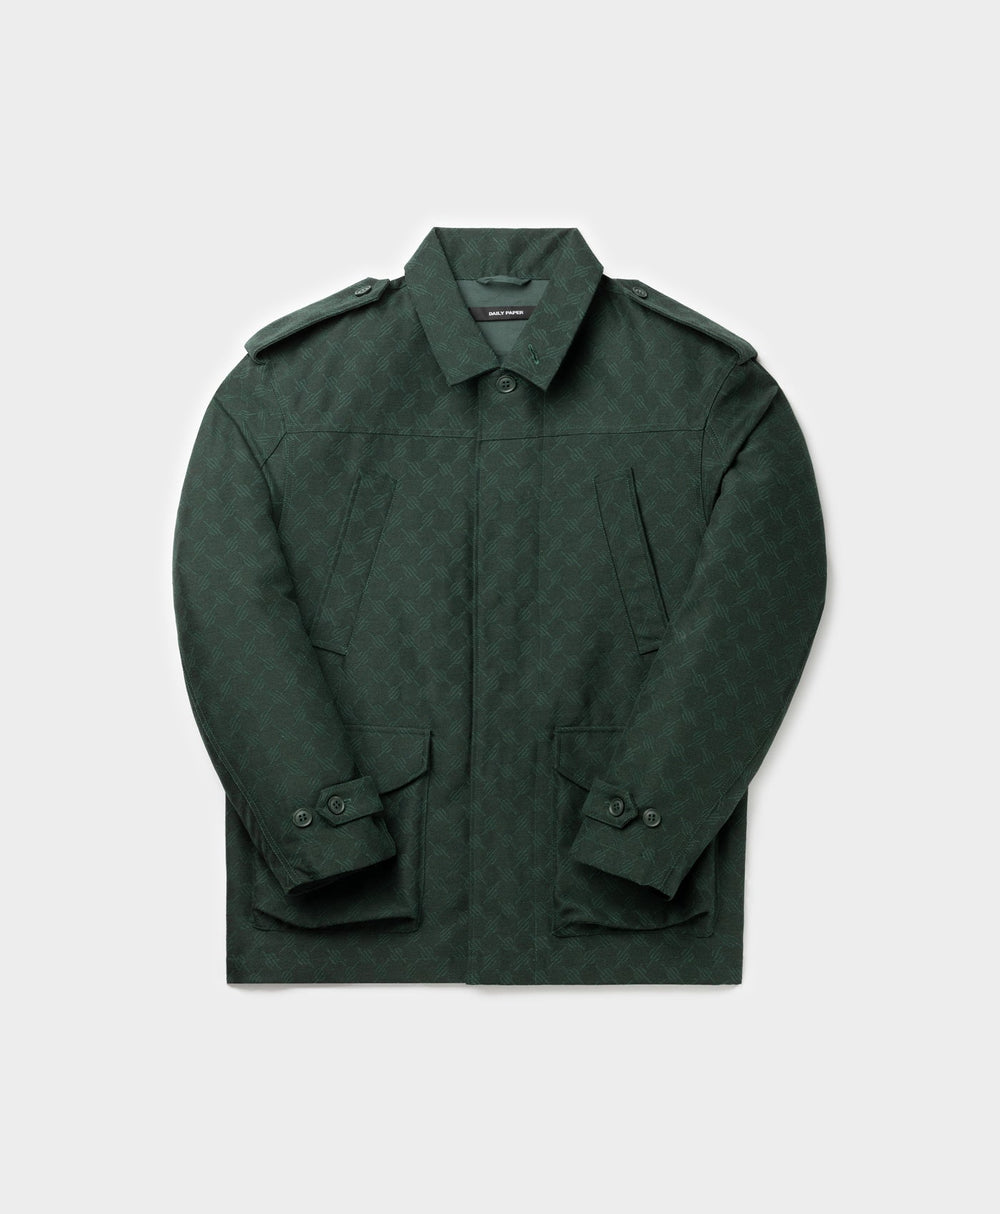 DP - Pine Green Imani Monogram Jacket - Packshot - Front